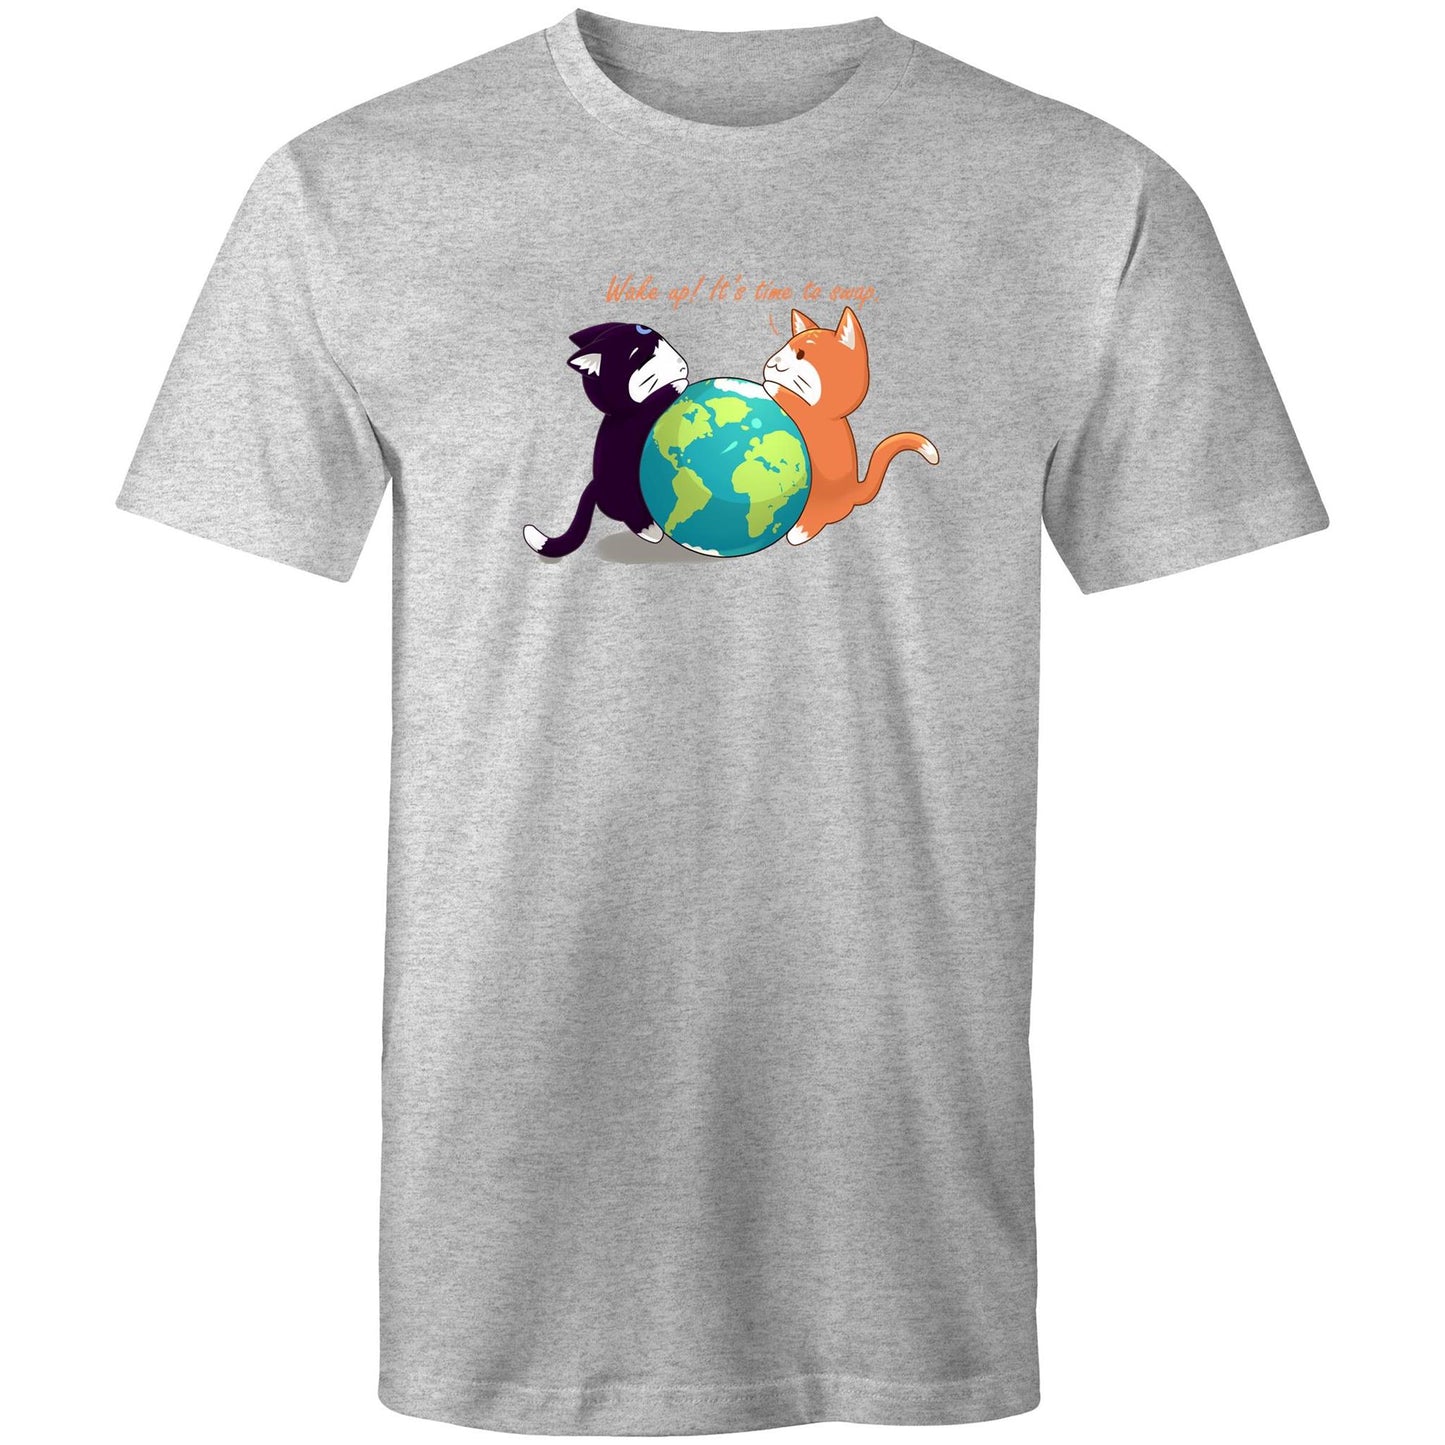 Around the World - T-shirt